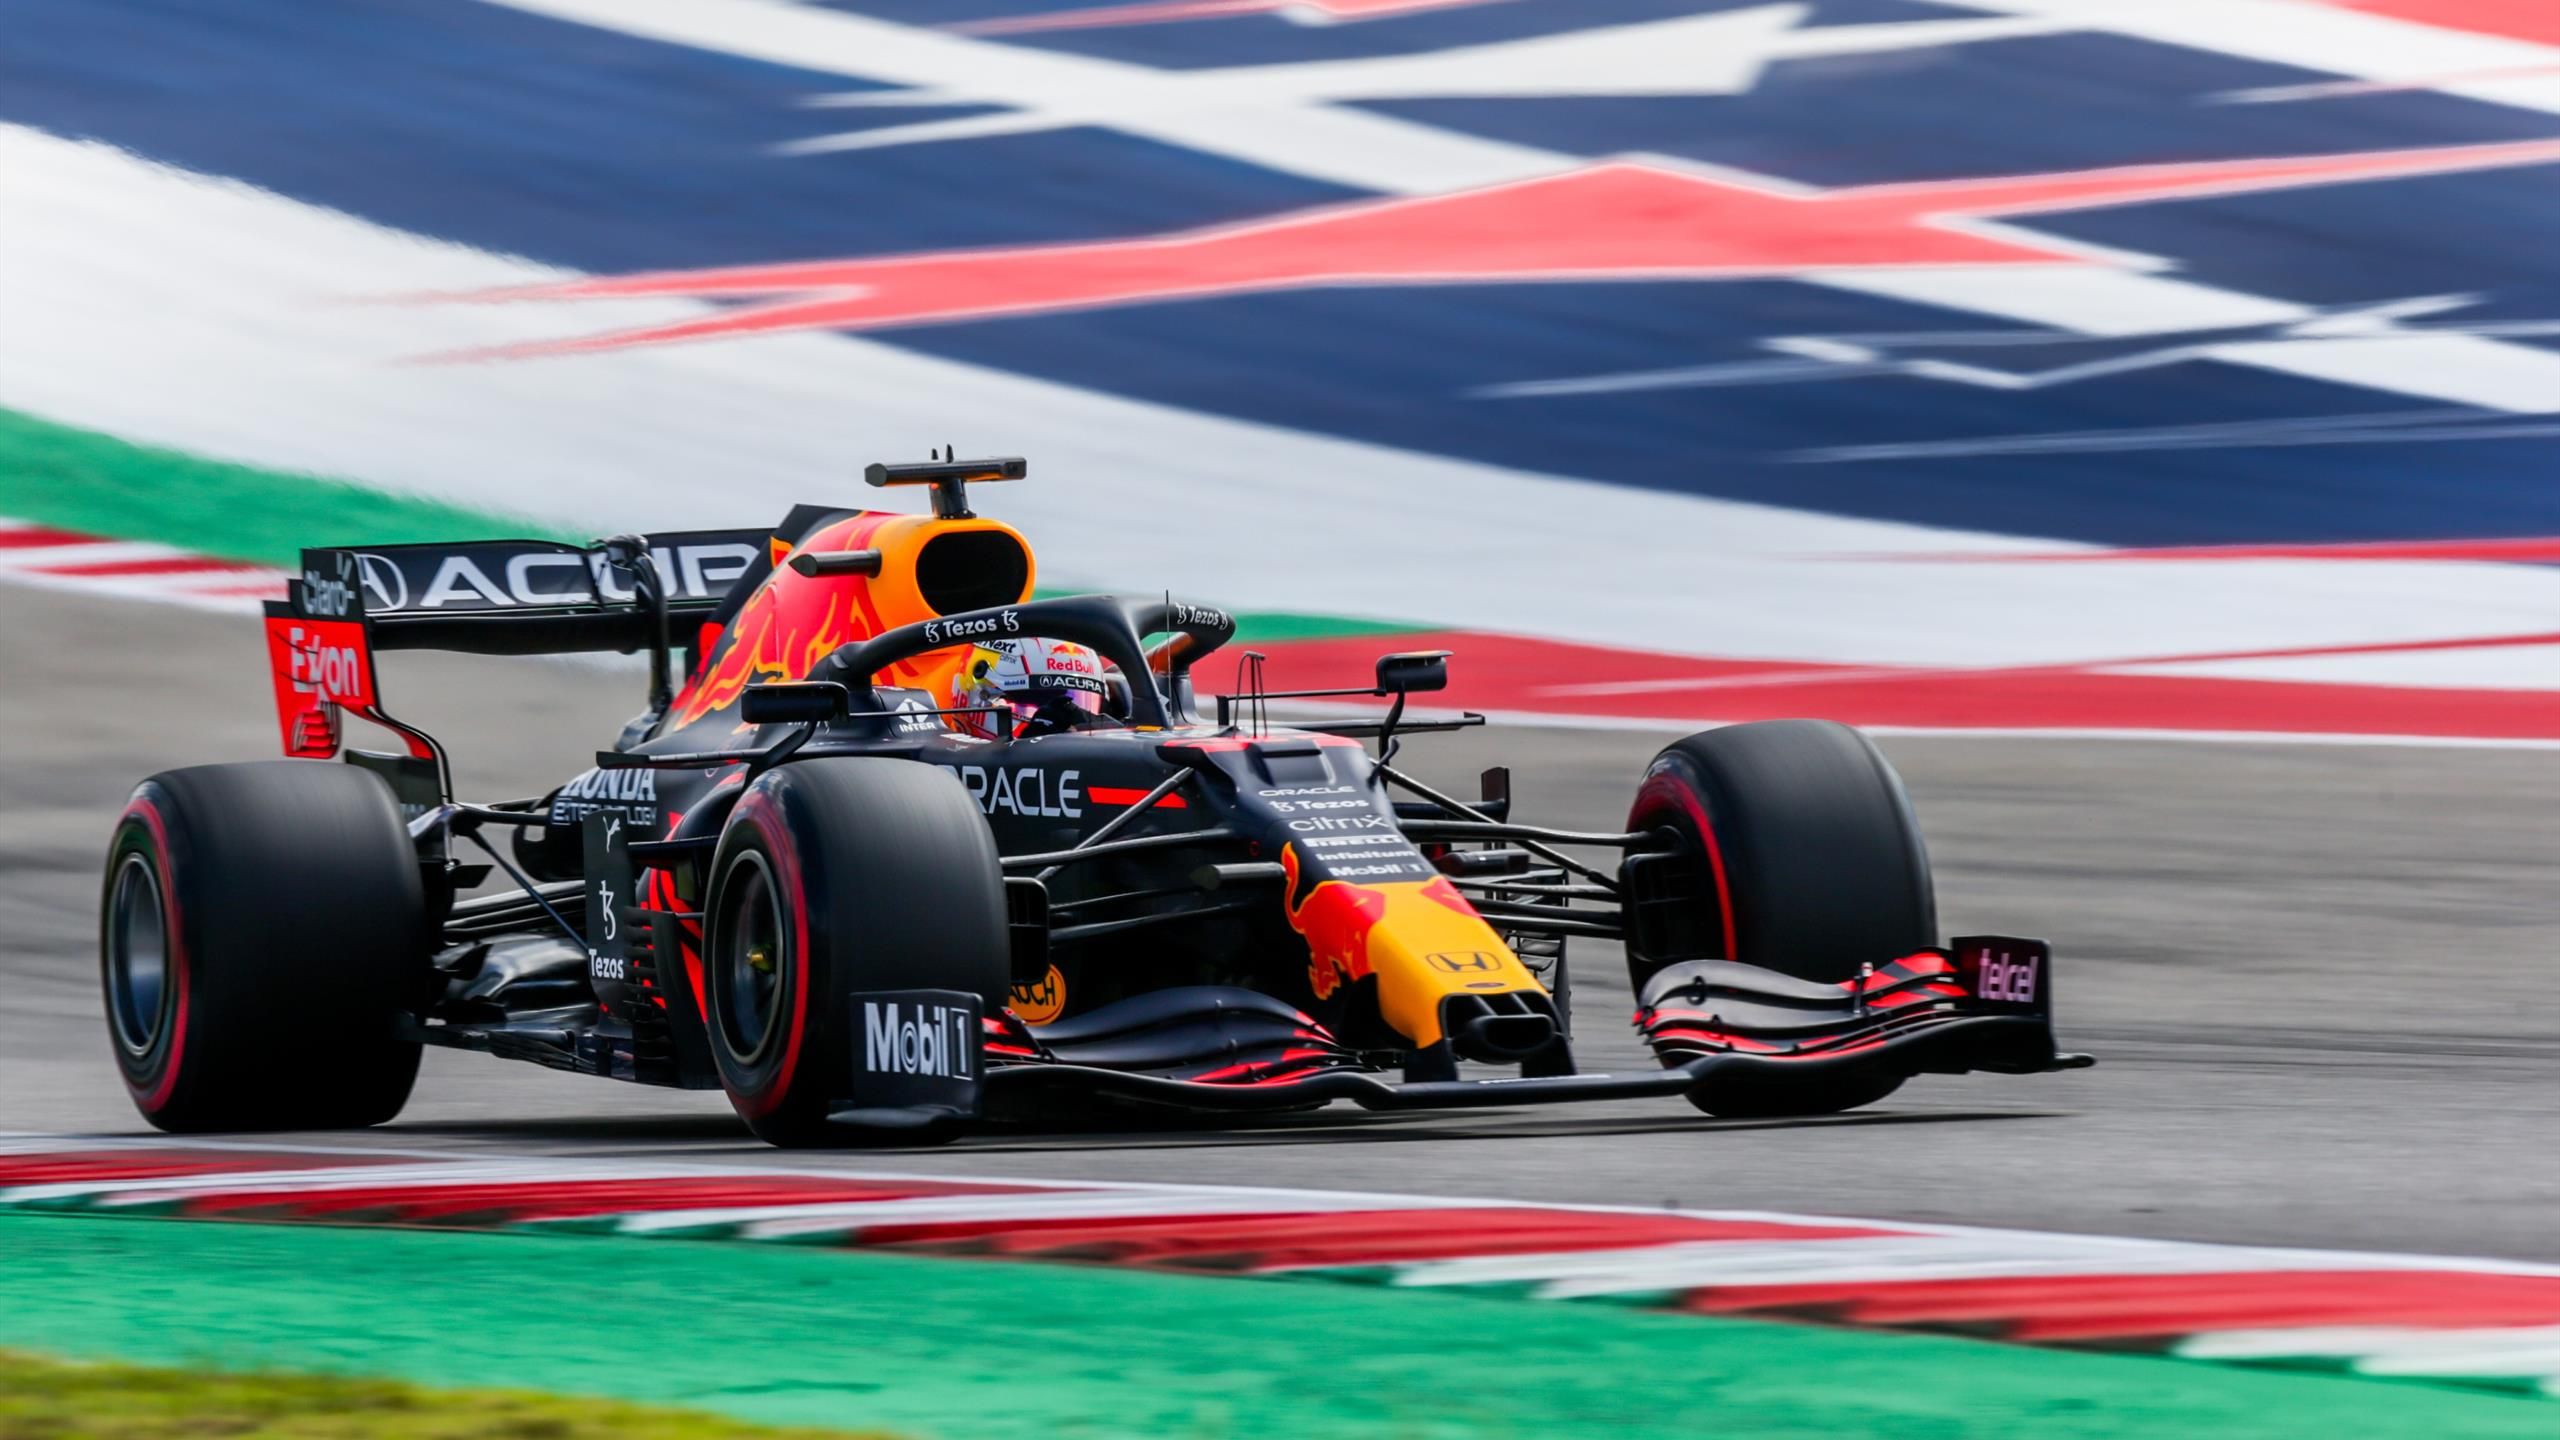 Fórmula Gran Premio de Estados Unidos | Verstappen se lleva la pole con Carlos Sainz en quinta posición - Eurosport